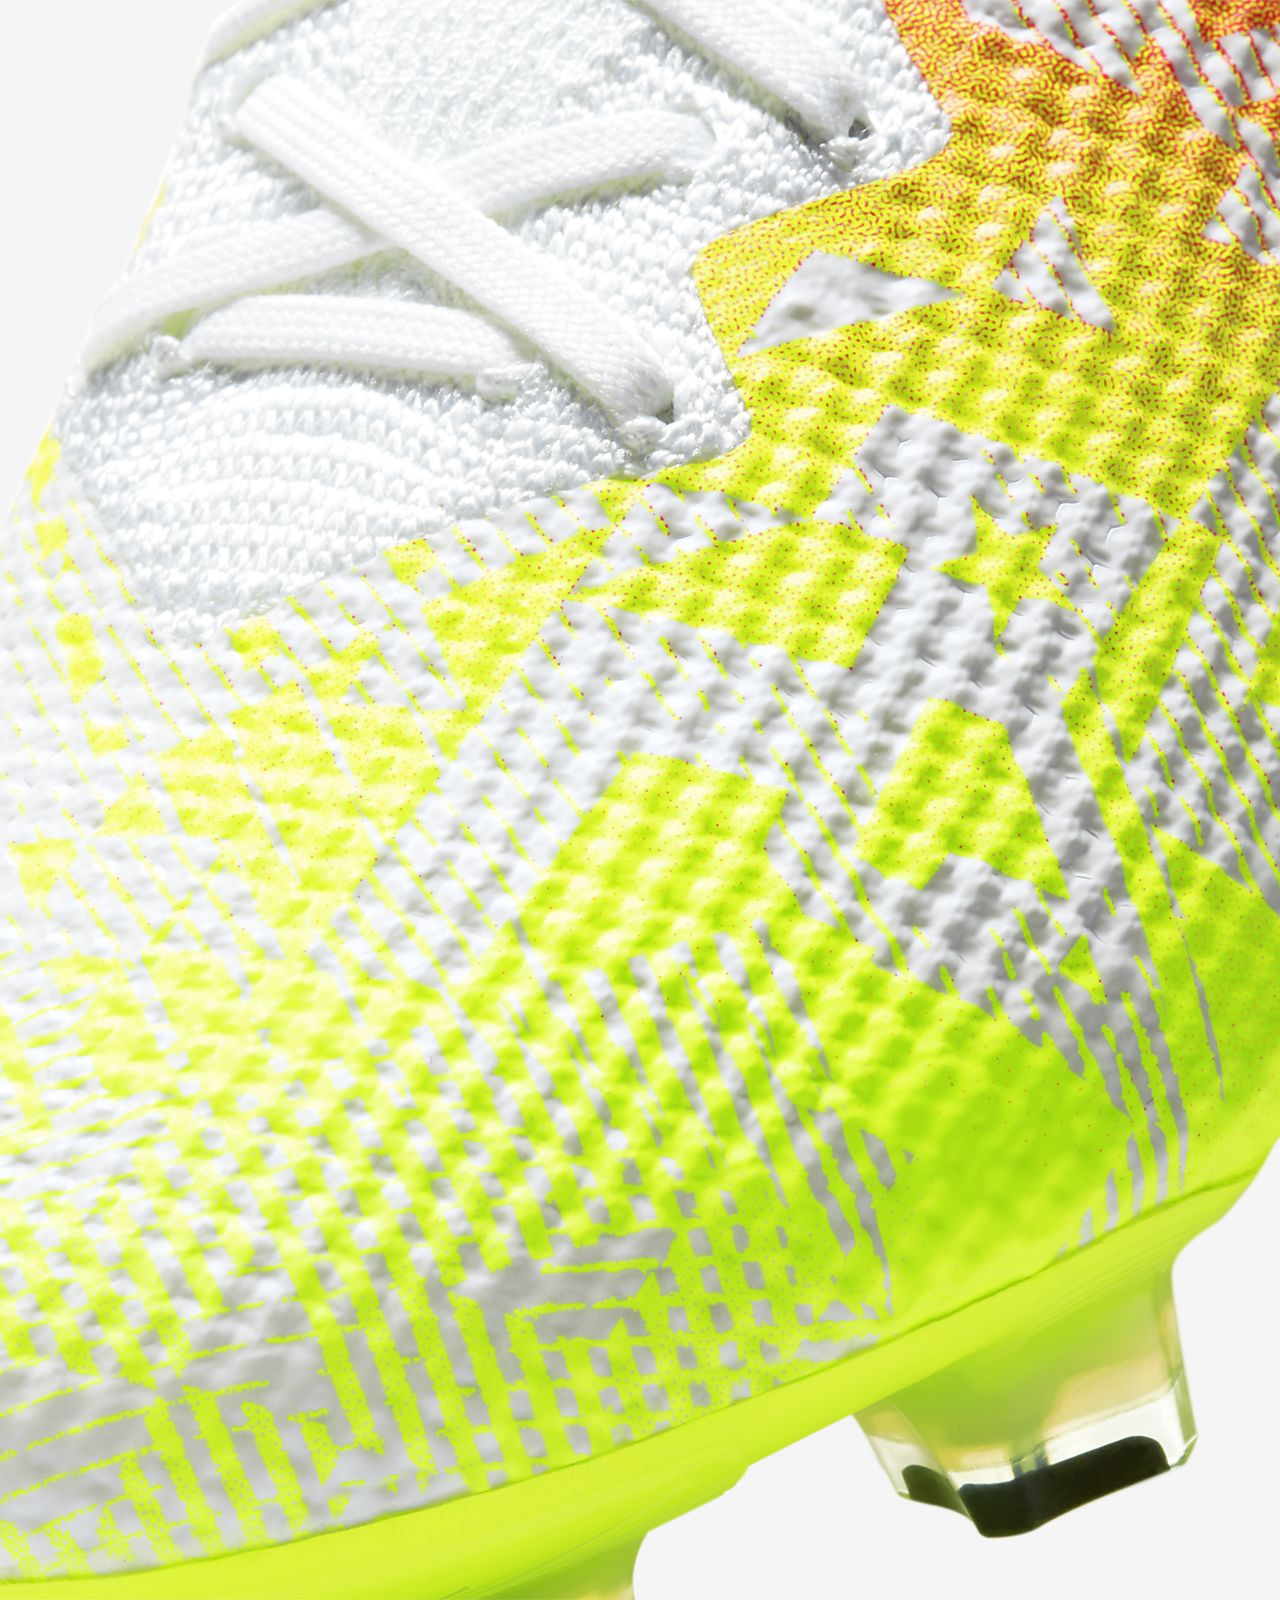 Nike Vapor 13 Elite FG R GOL.com Football boots.